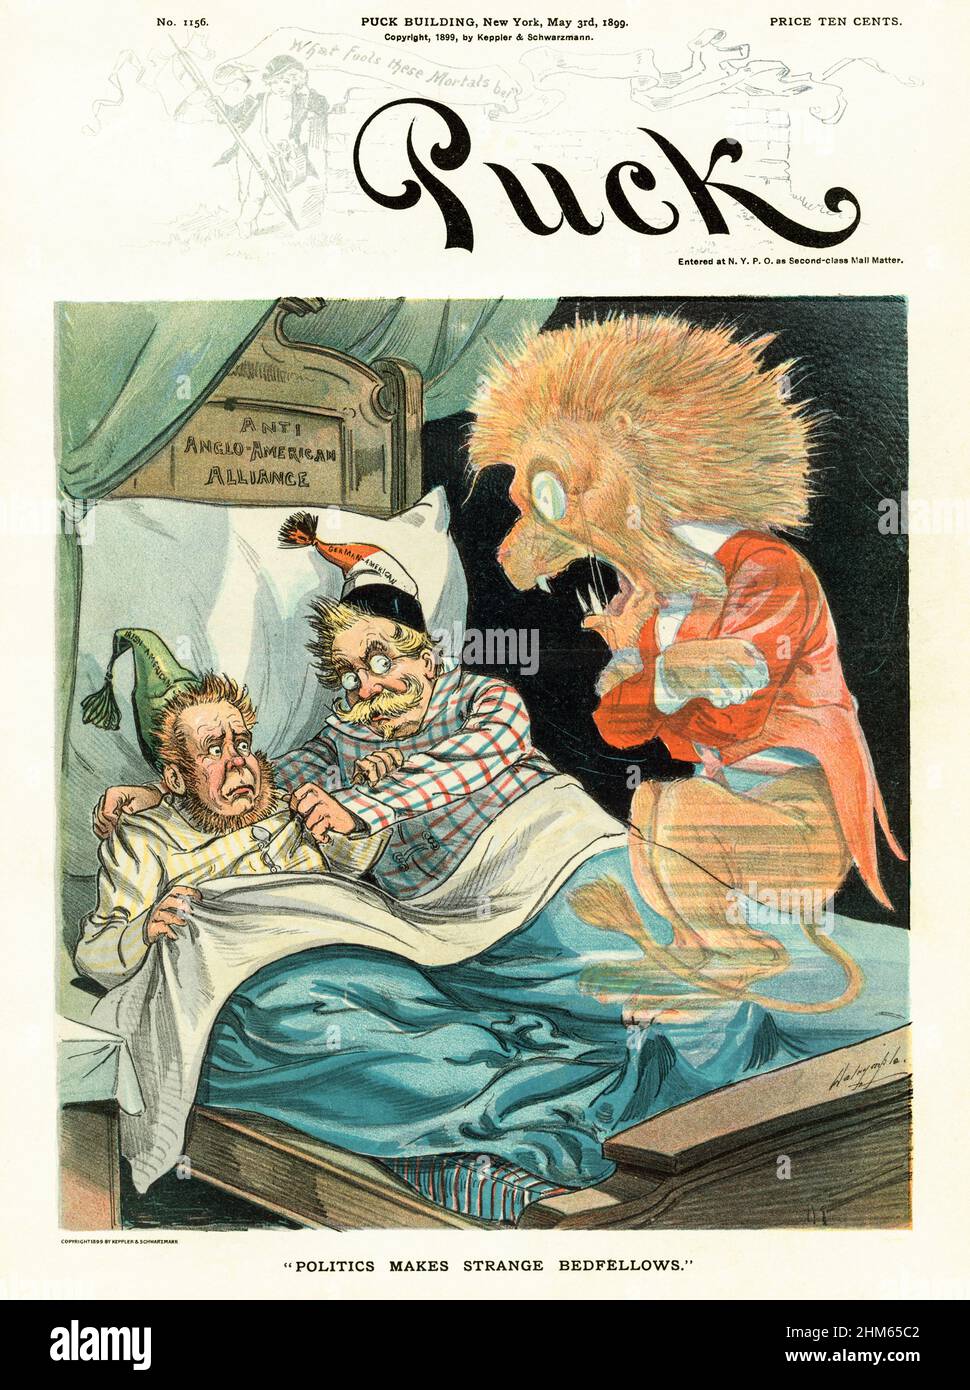 Una cover della rivista americana Puck del tardo 19th secolo con un cartone animato del fantasma del Leone britannico che reagisce con paura di trovare un 'americano irlandese' e un 'americano tedesco' in un letto etichettato 'Anti Anglo-American Alliance'. Foto Stock